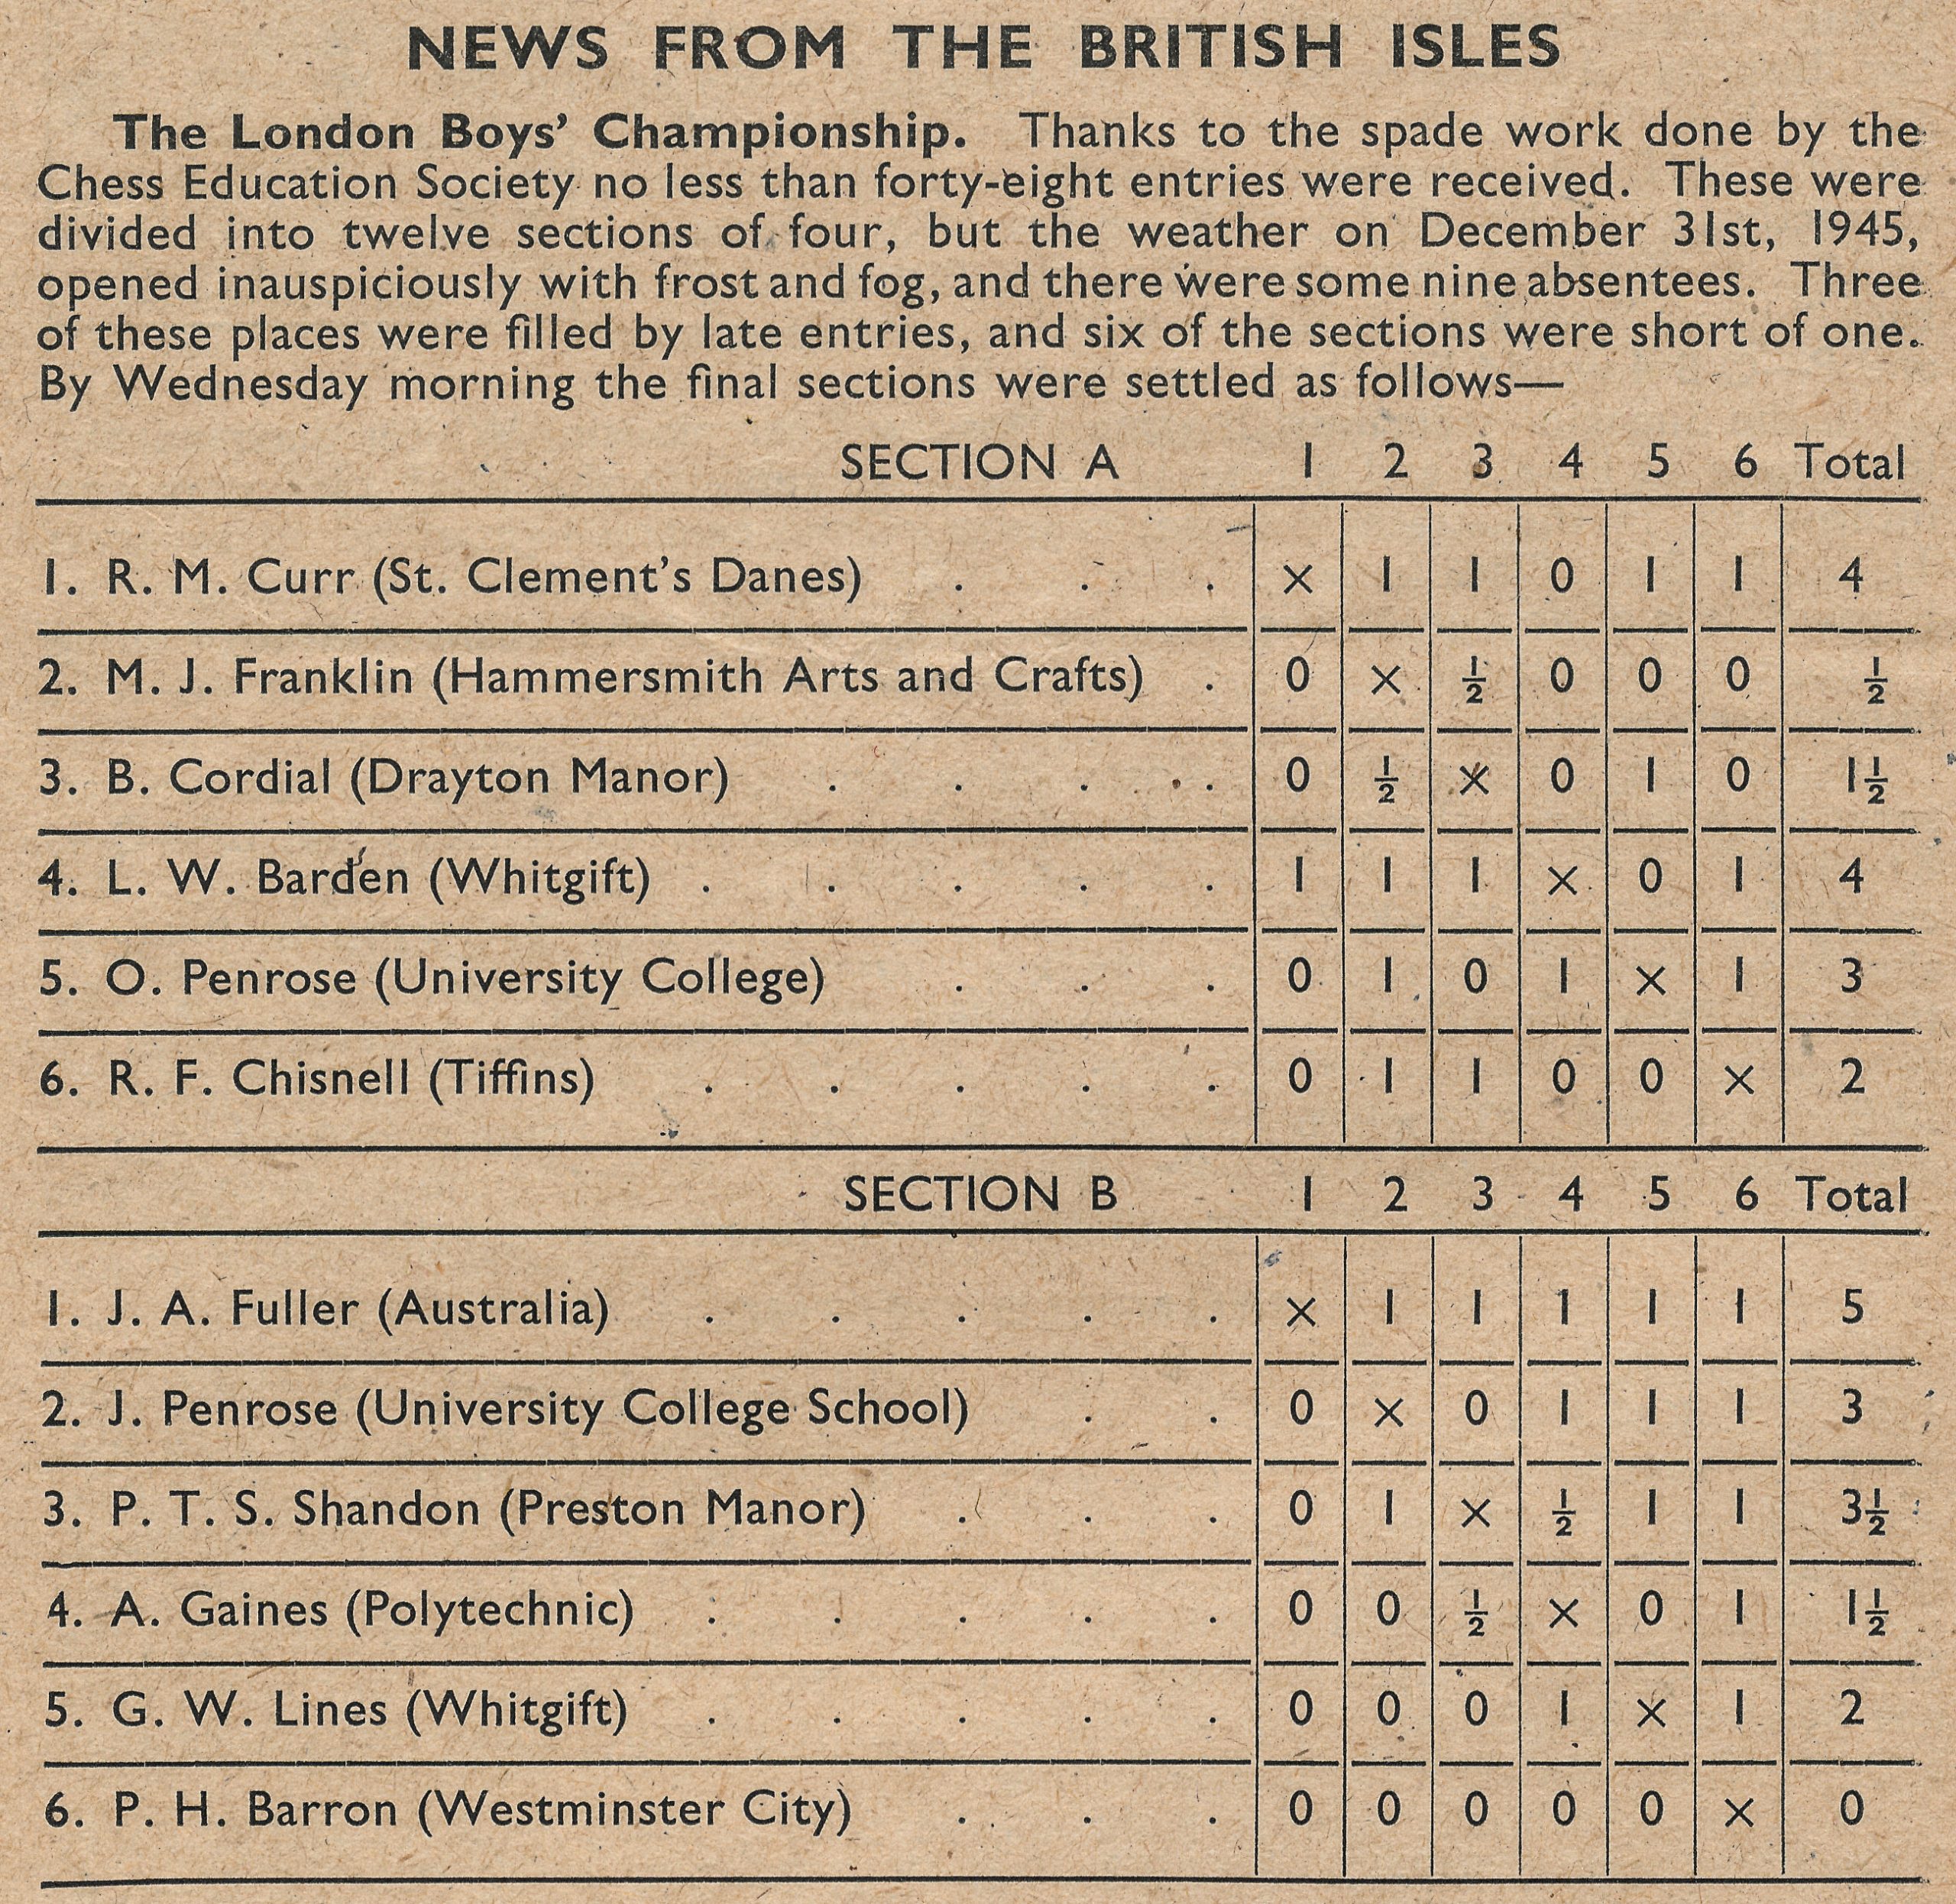 British Chess Magazine, Volume LXVI (66, 1946), Number 2 (February), page 52